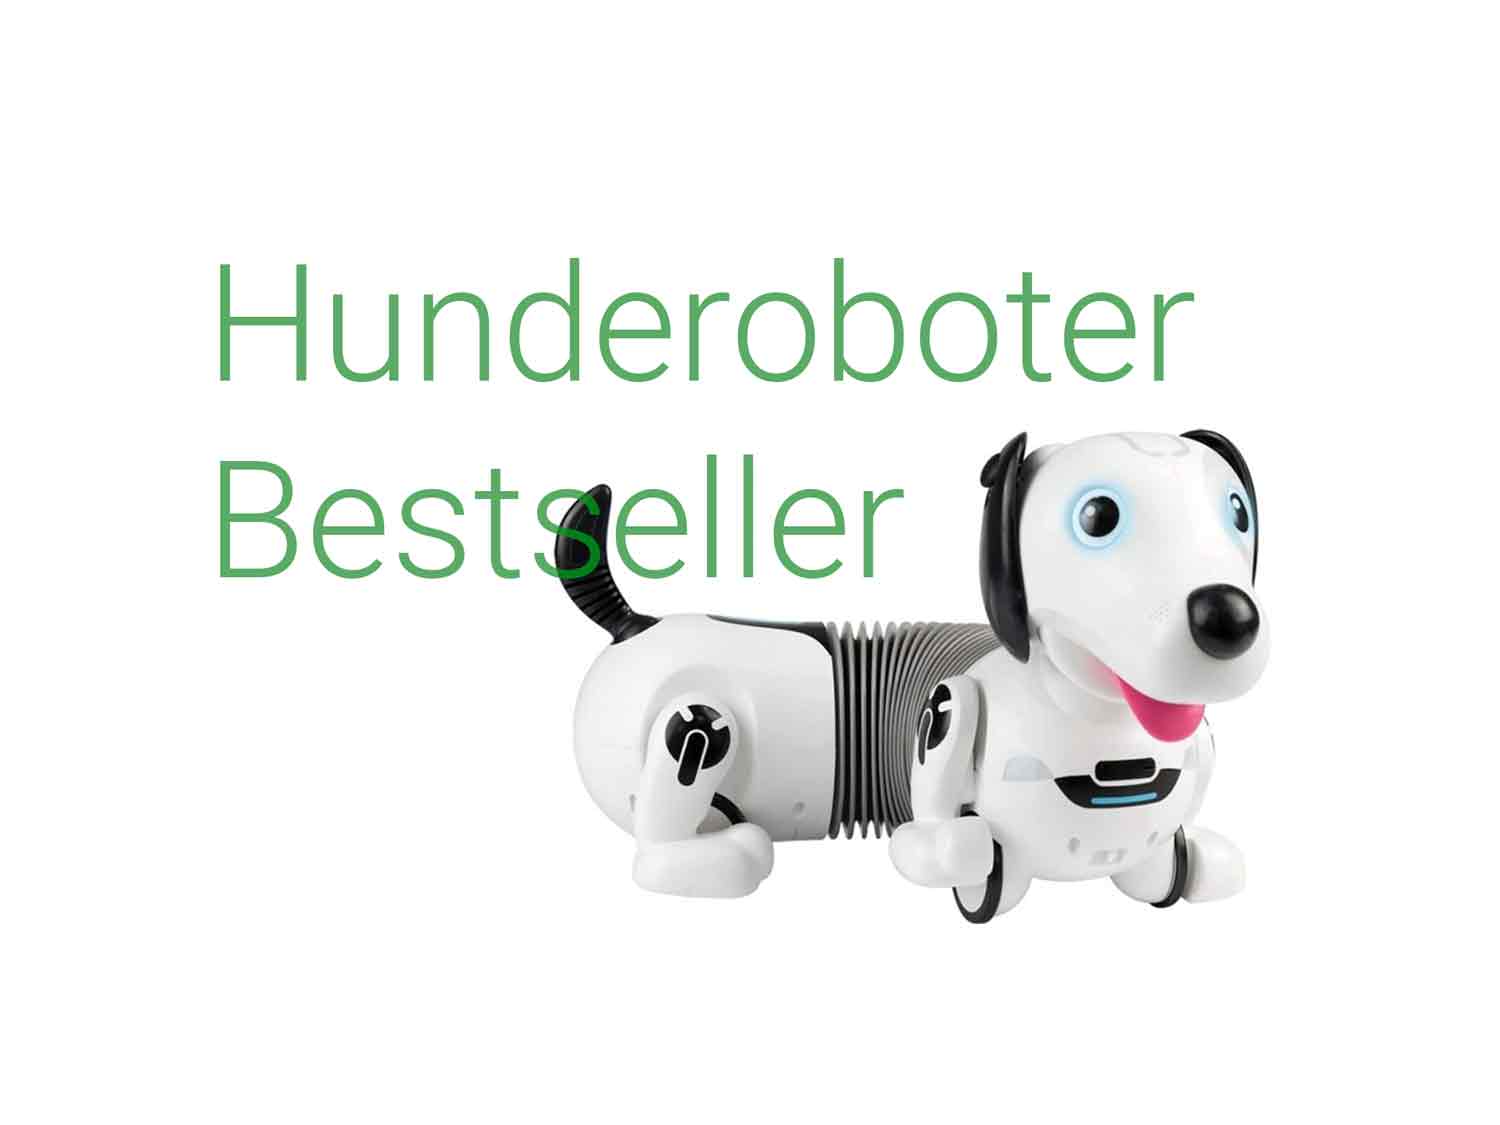 hunderoboter-kinder-beliebt-bestseller-header